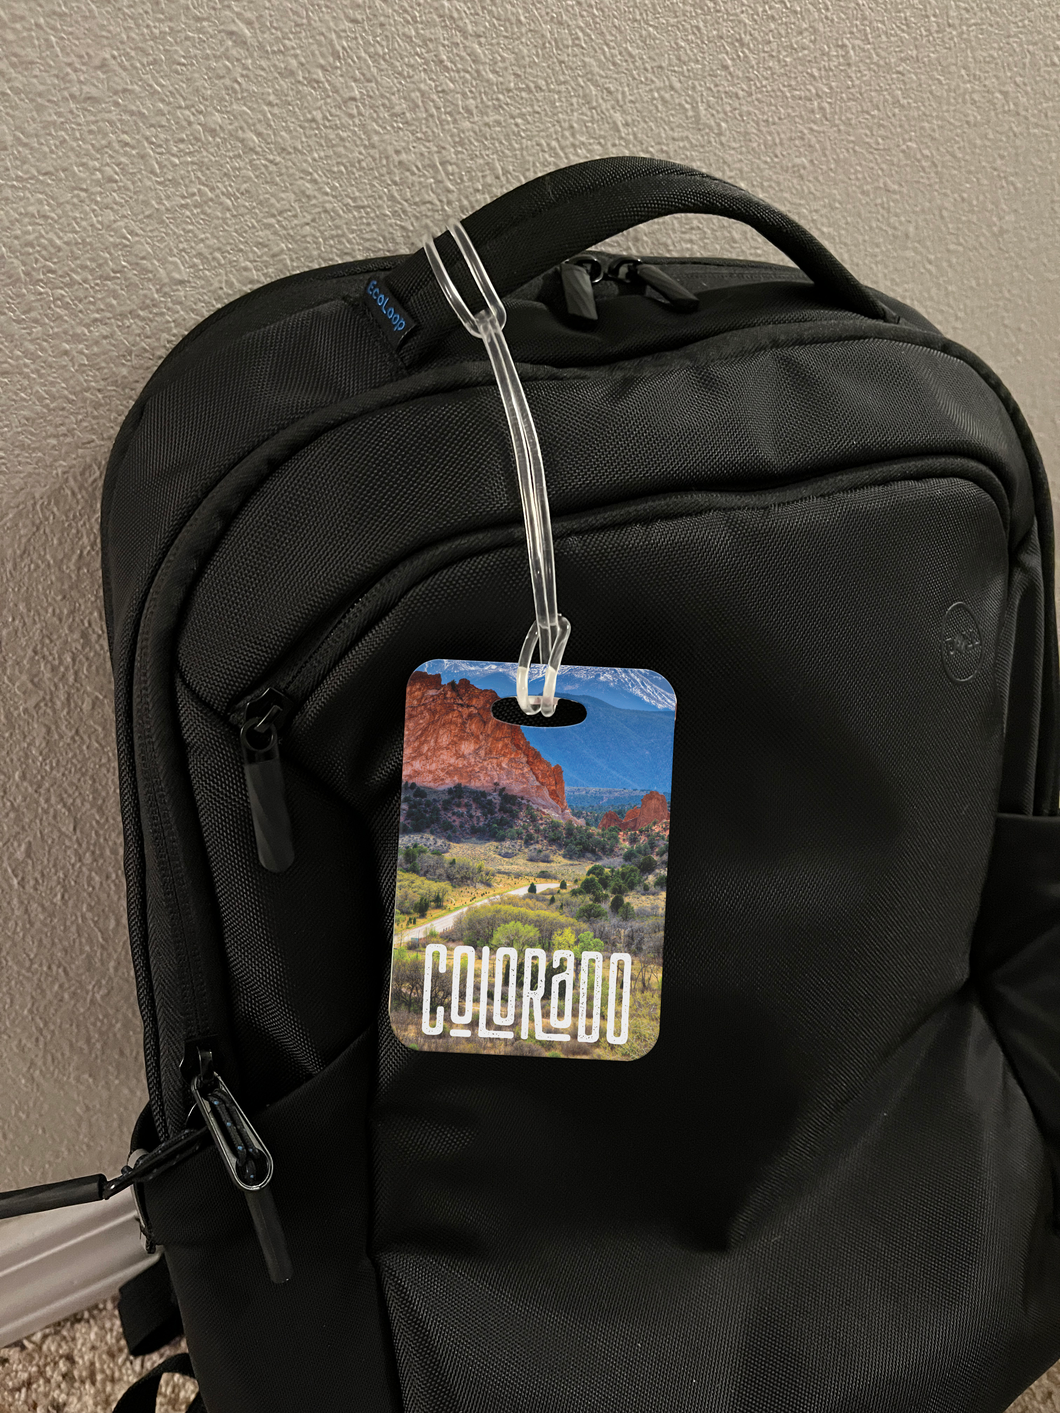 Colorado Luggage Bag Tag